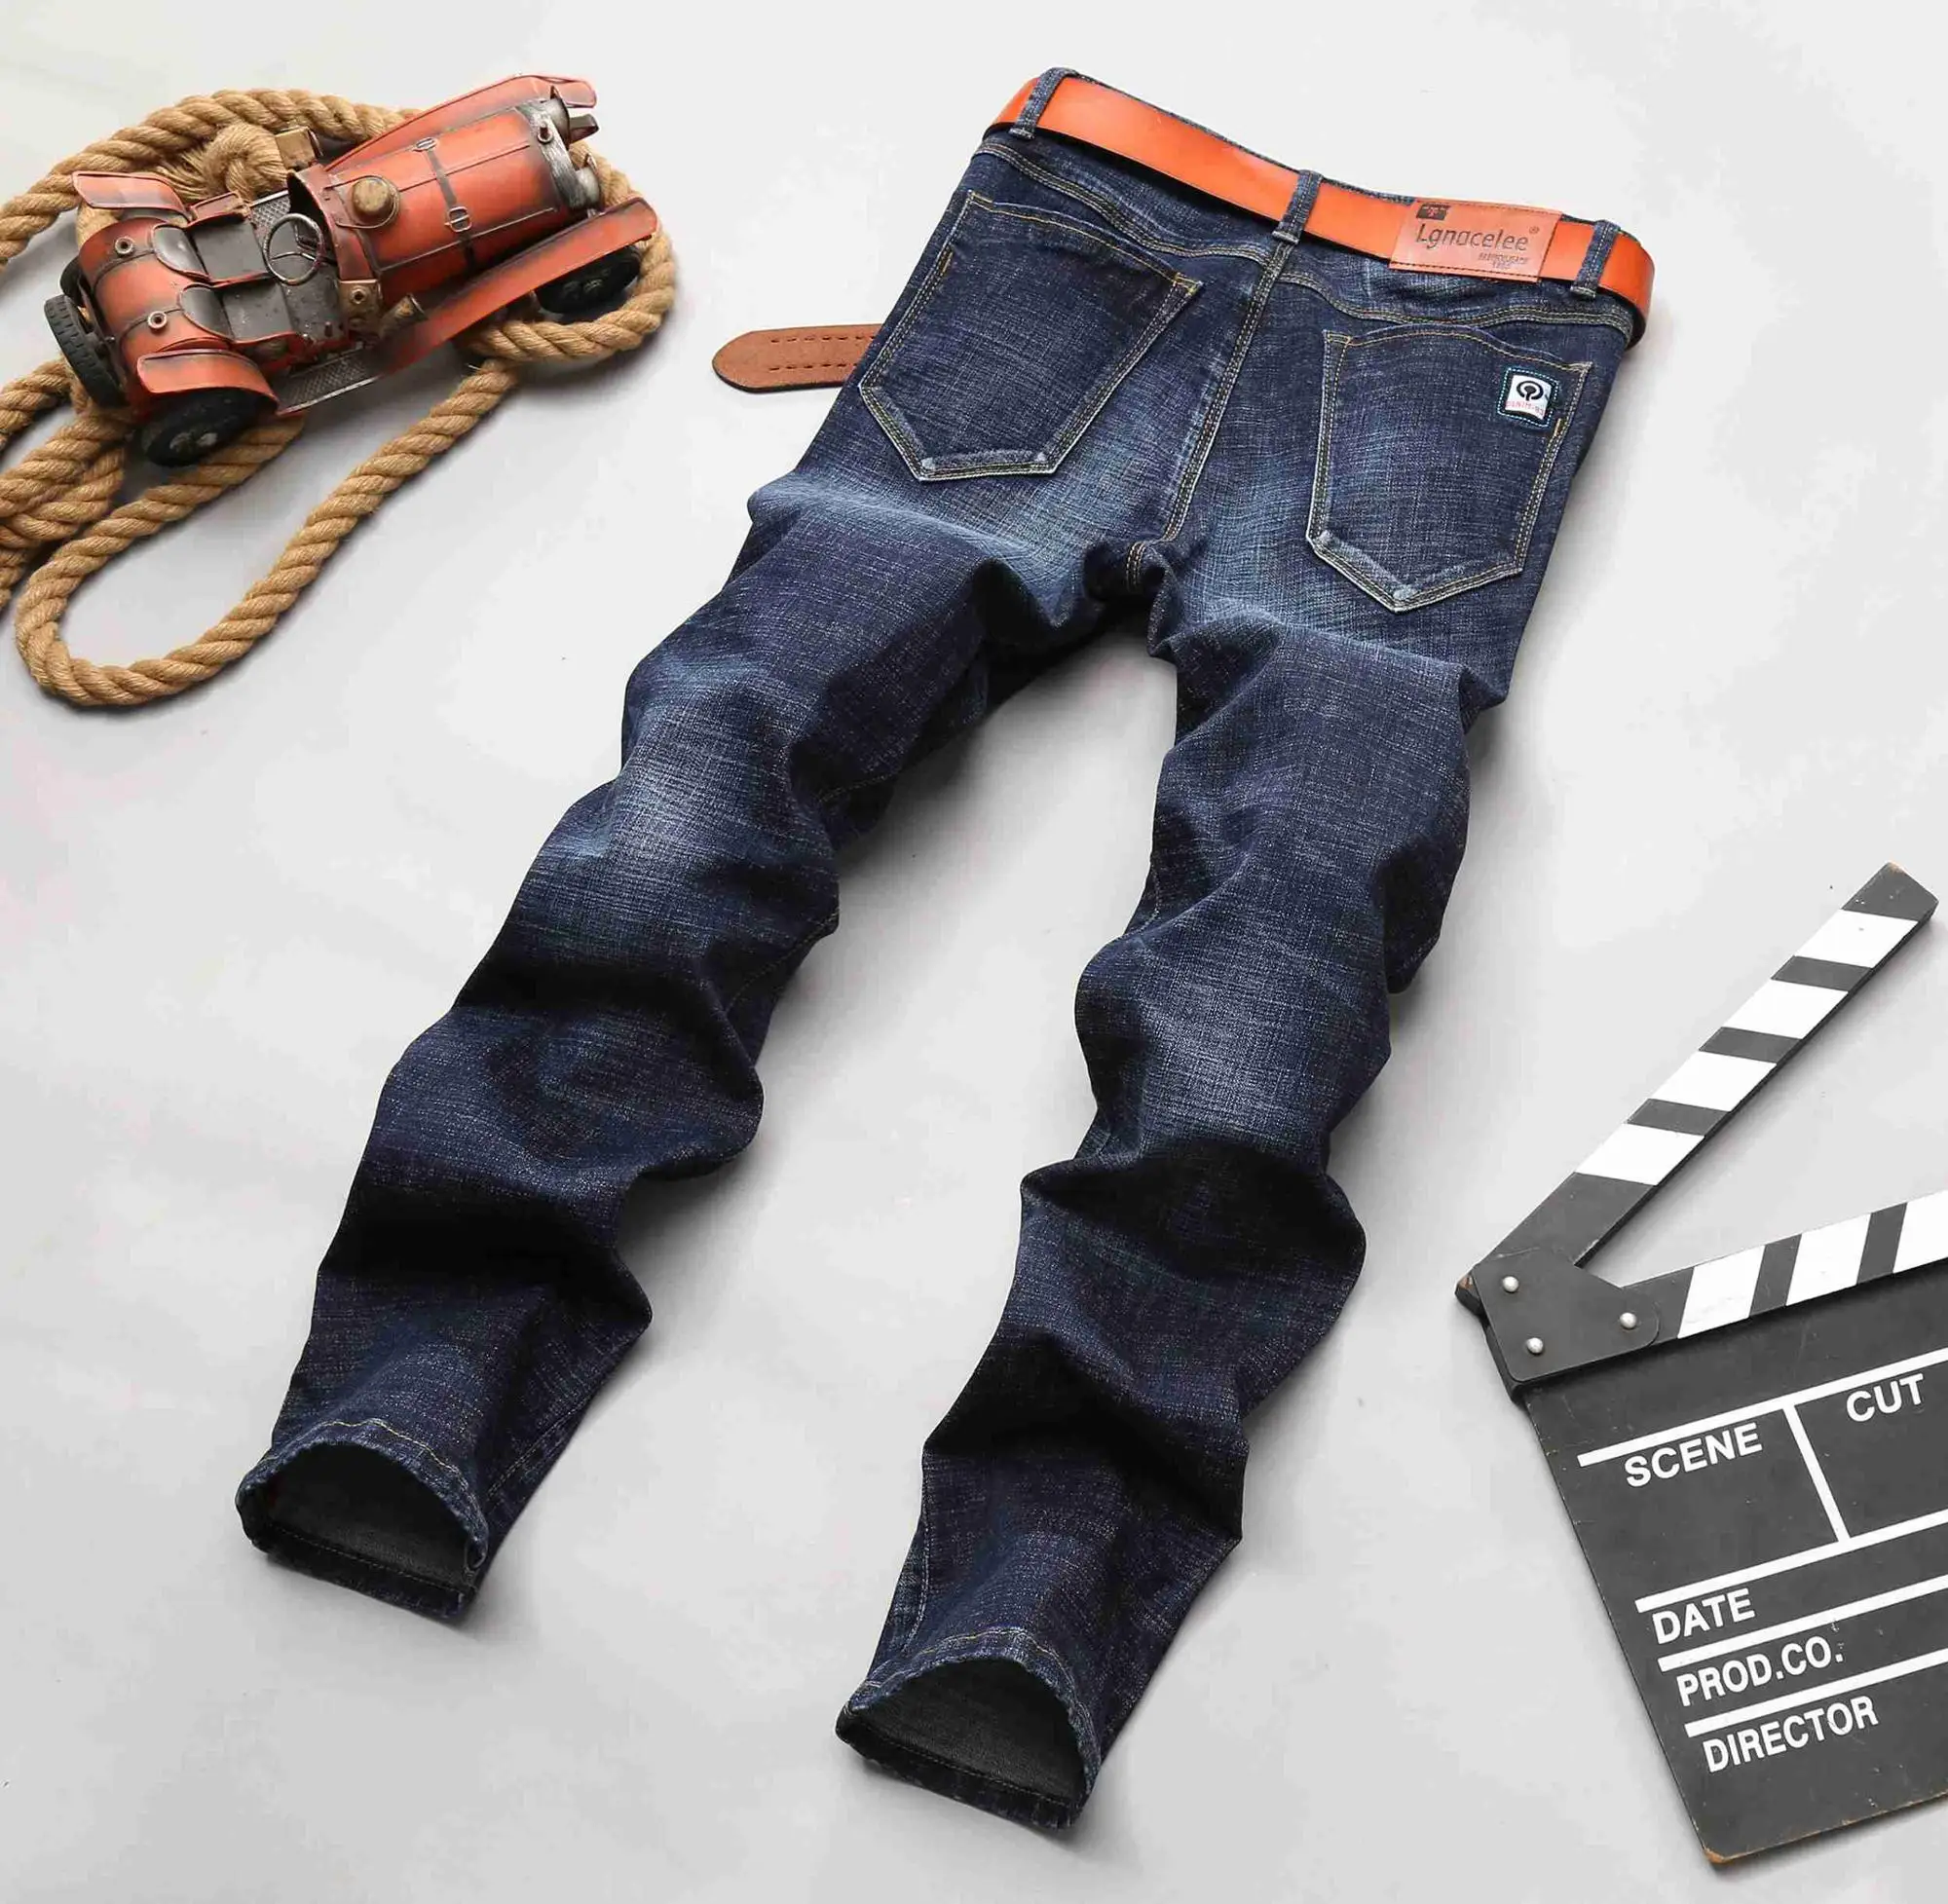 custom mens jeans online